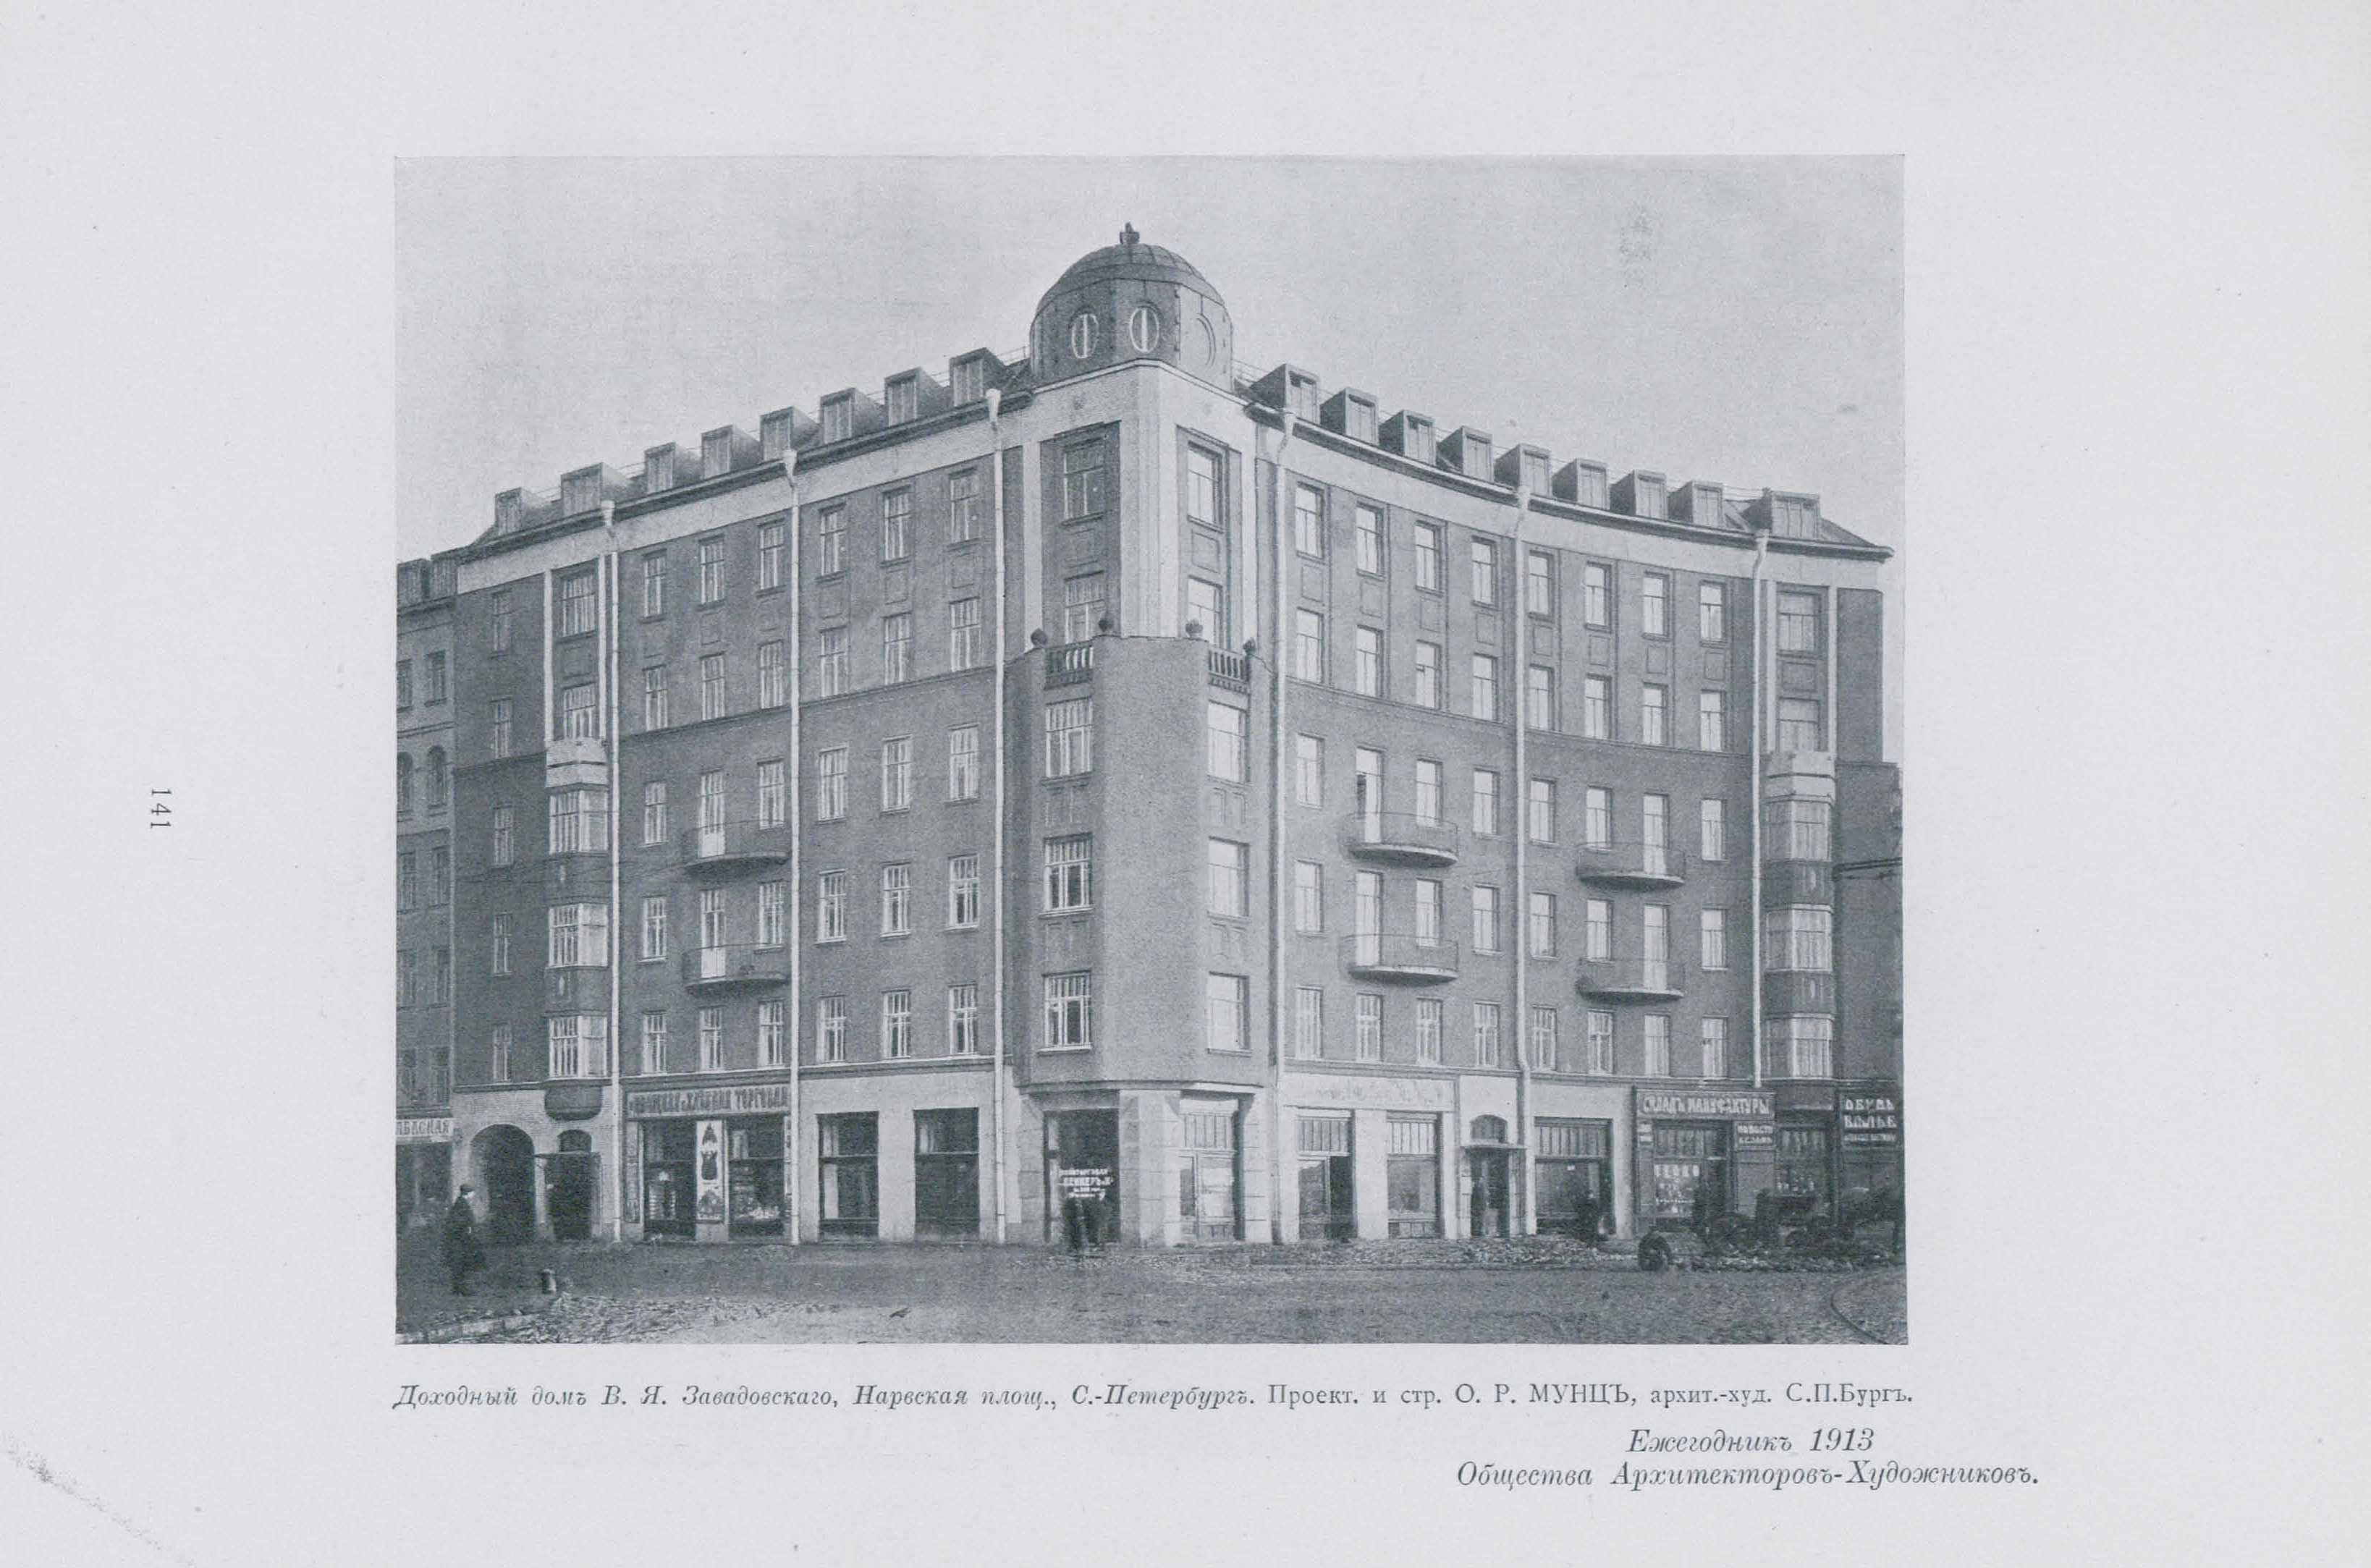 ezhegodnik-obshchestva-arhitektorov-hudozhnikov-08-1913-233.jpg